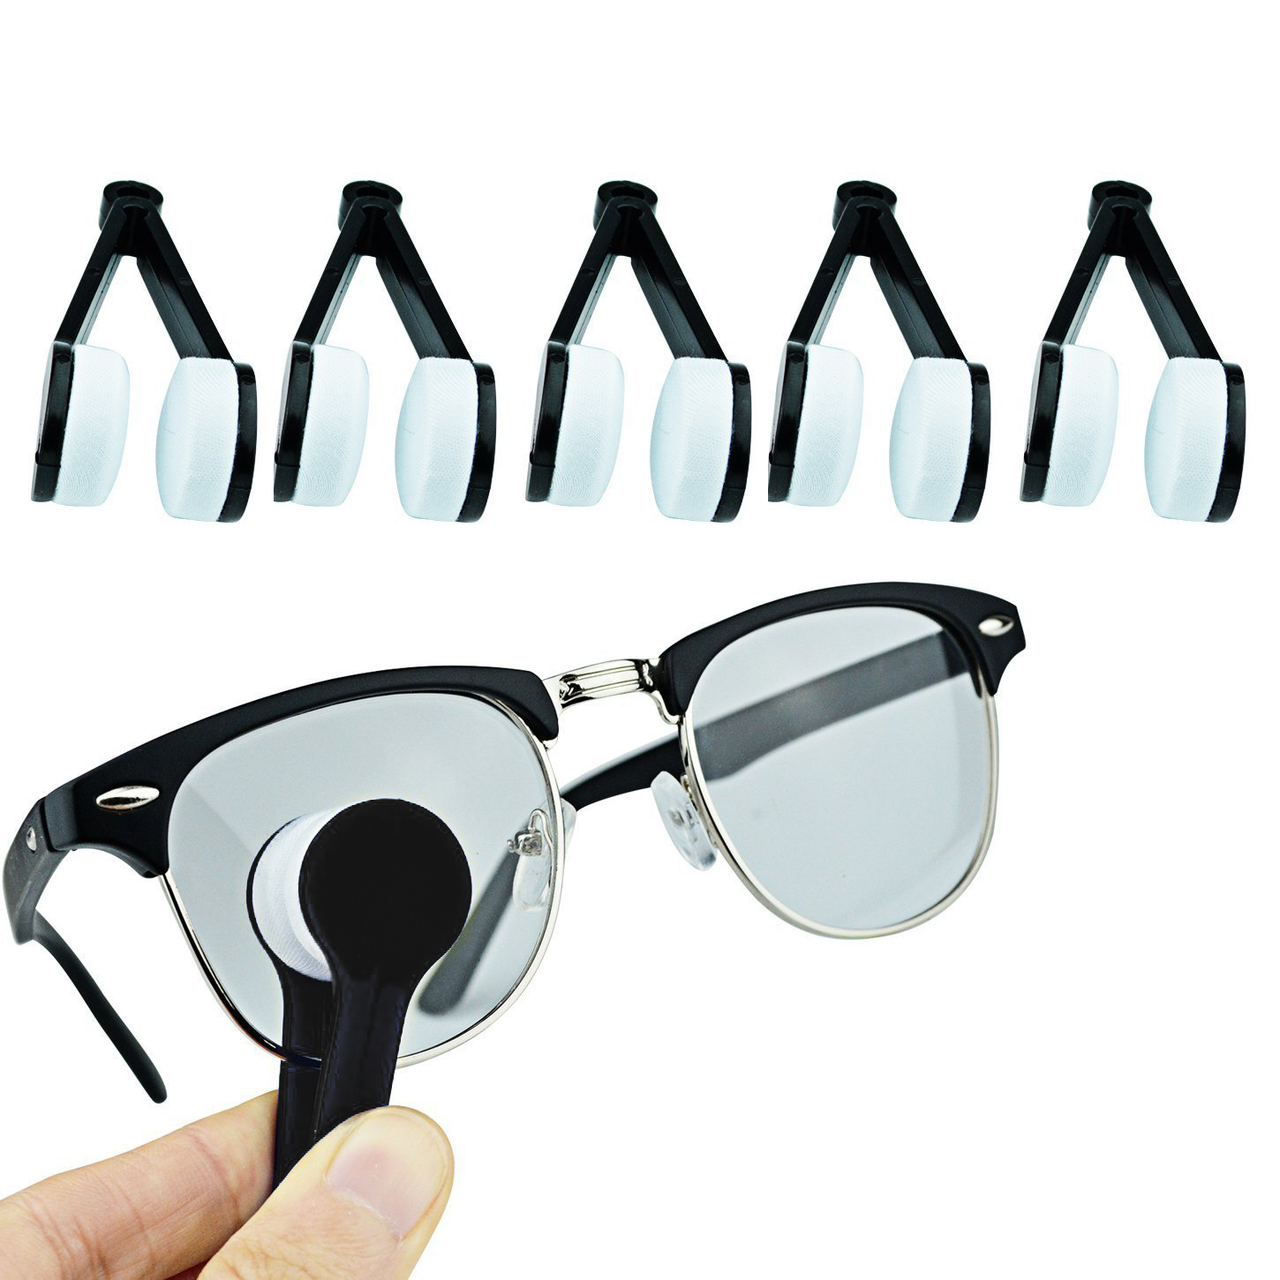 Eyeglass Microfiber Cleaning Tools, 6 Pack, Black